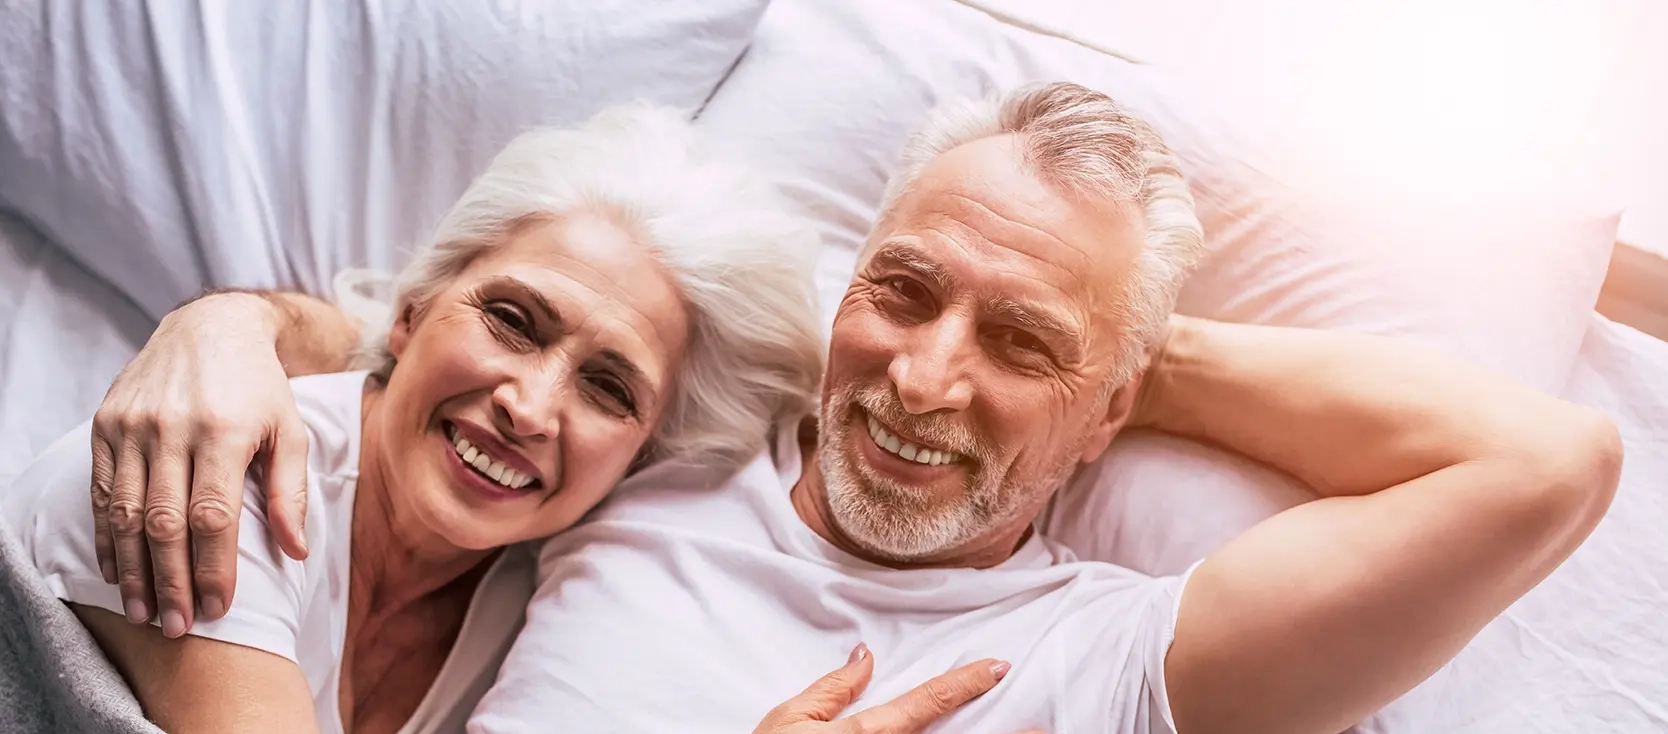 Ein älteres Ehepaar liegt zusammen im Bett und lacht.